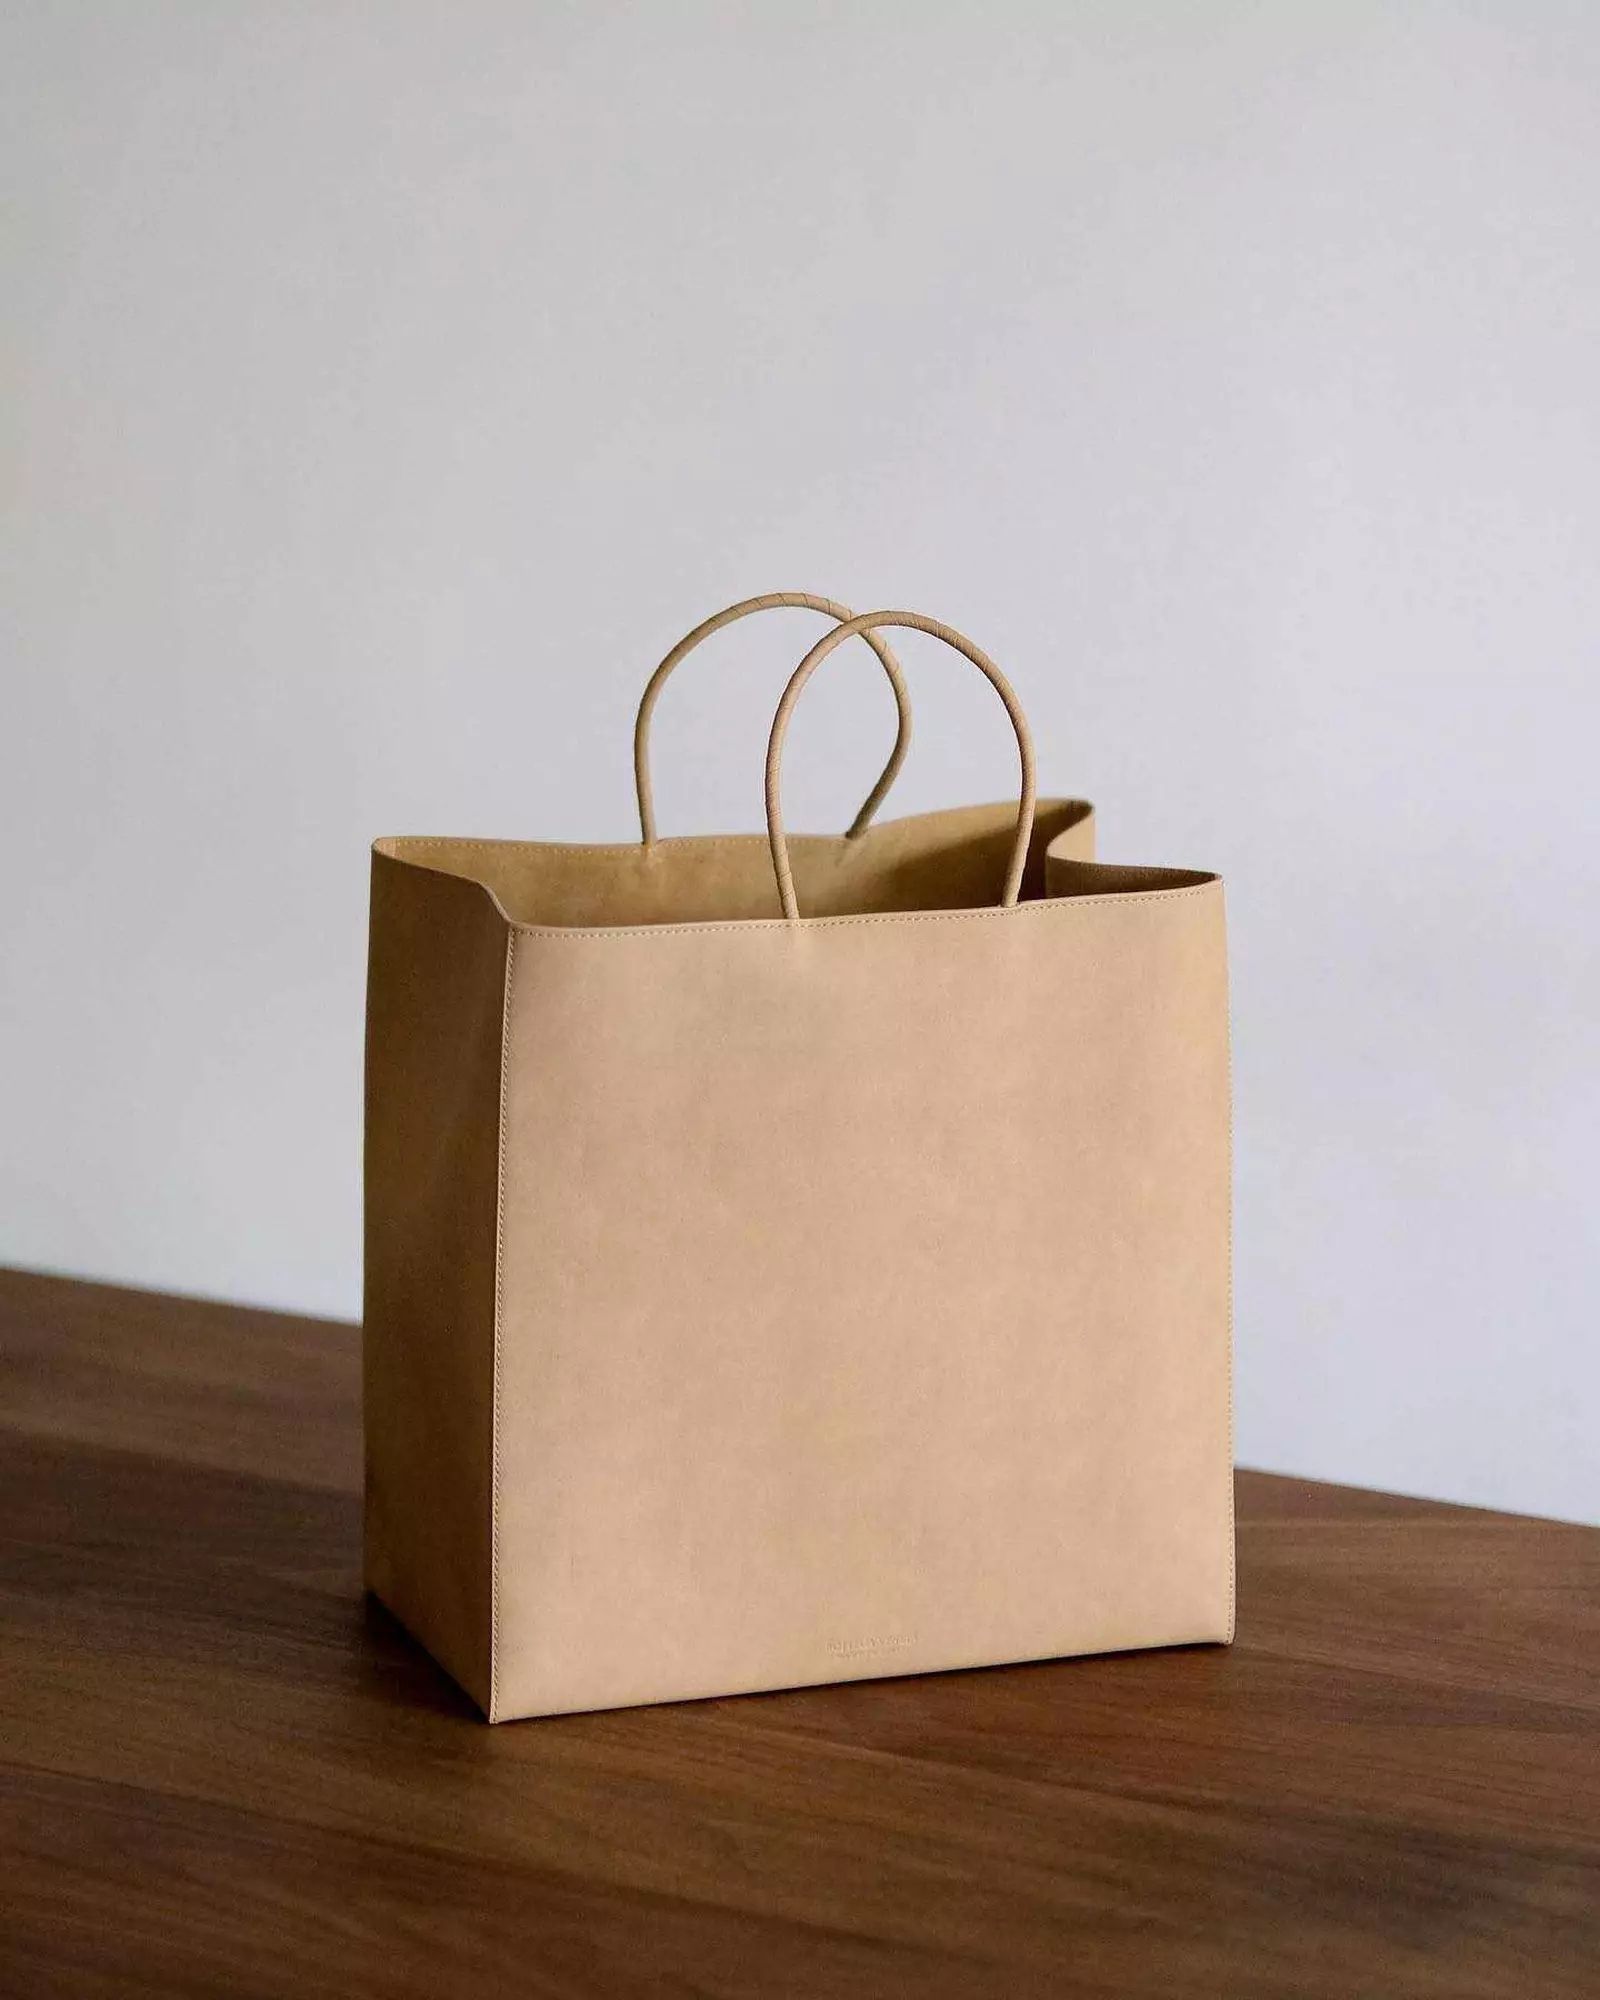 Bottega Veneta y el bolso de 2000€ que imita una bolsa de papel